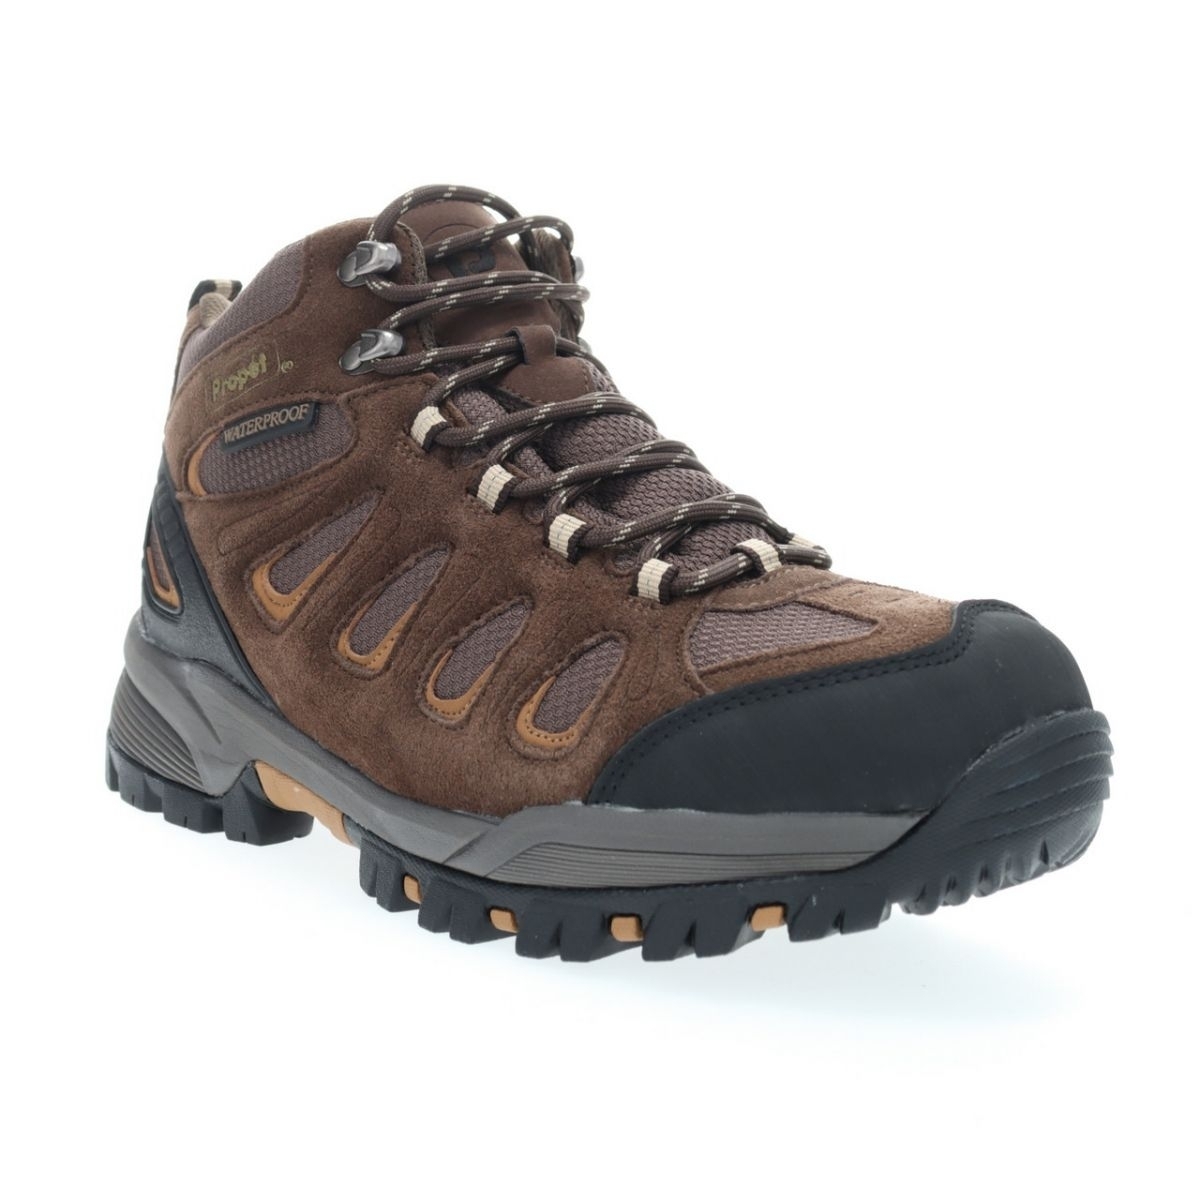 Propet Men's Ridge Walker Hiking Boot Brown - M3599BR 8 XX US Men BROWN - BROWN, 9.5 X-Wide